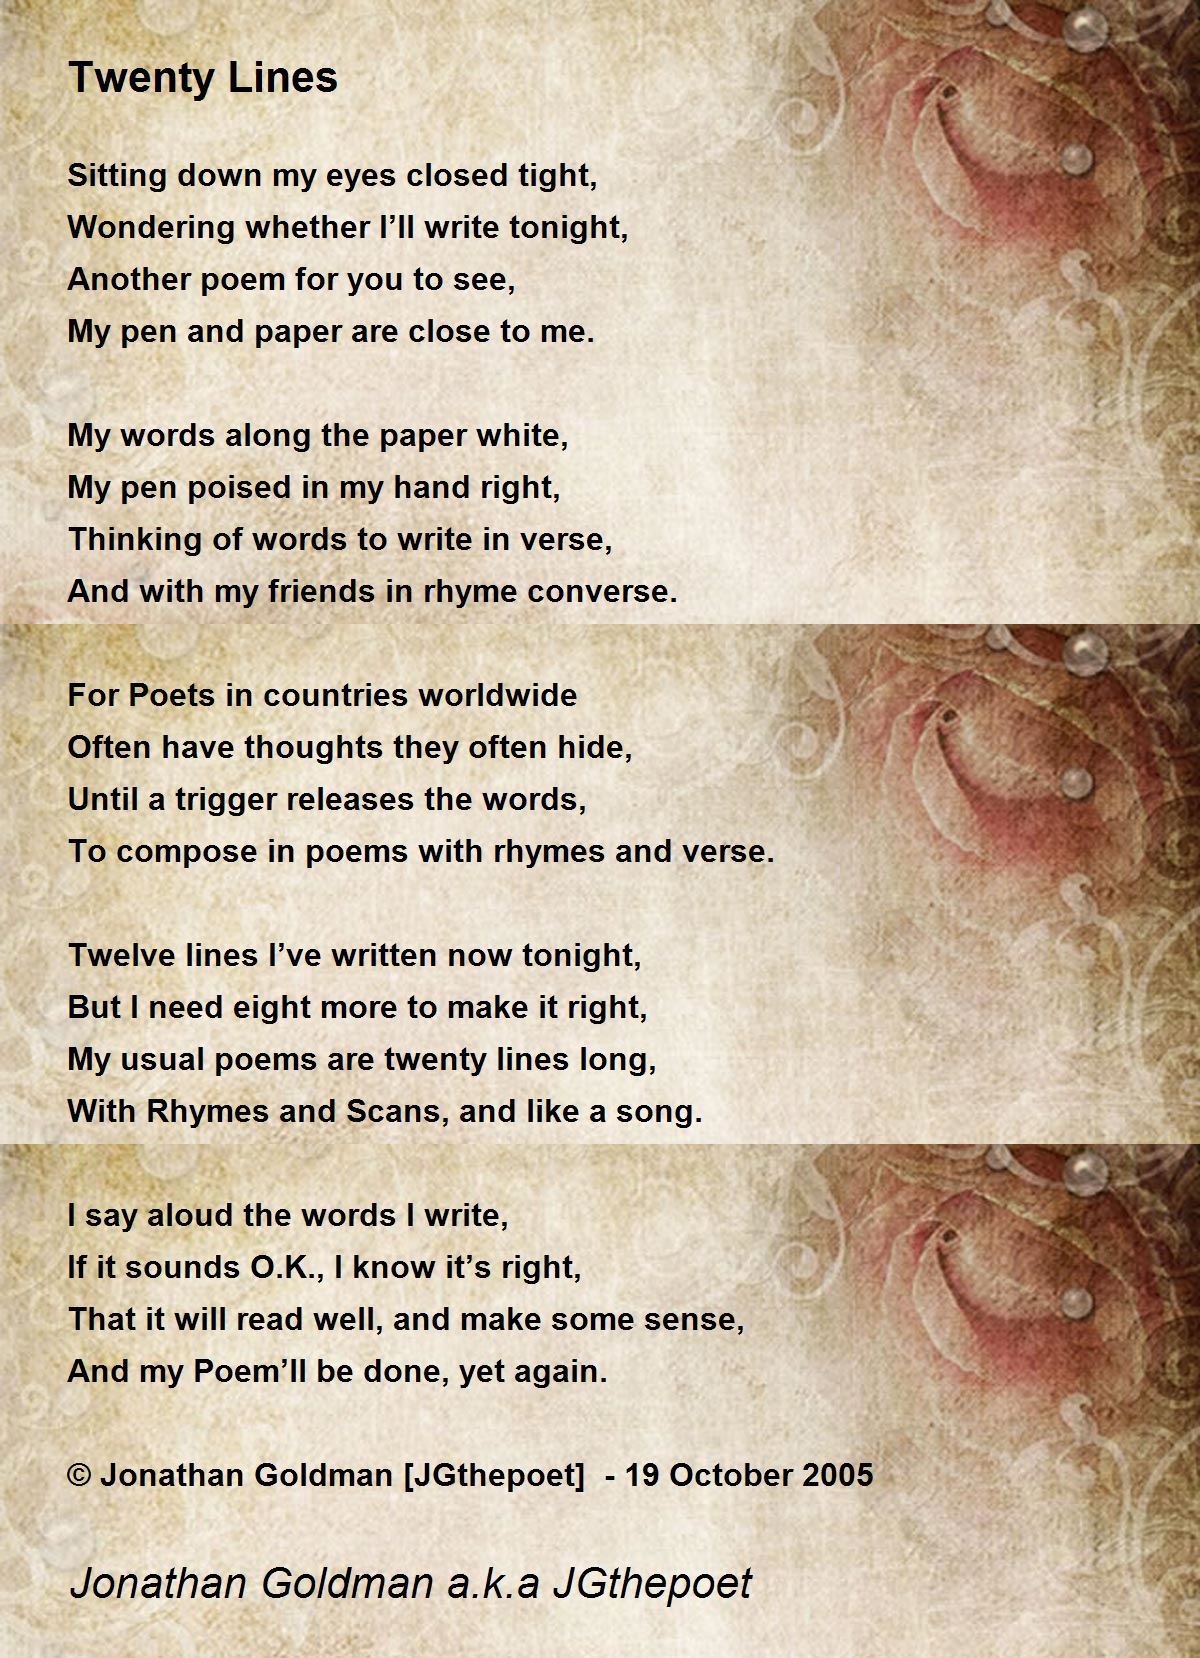 Twenty Lines Poem By Jonathan Goldman